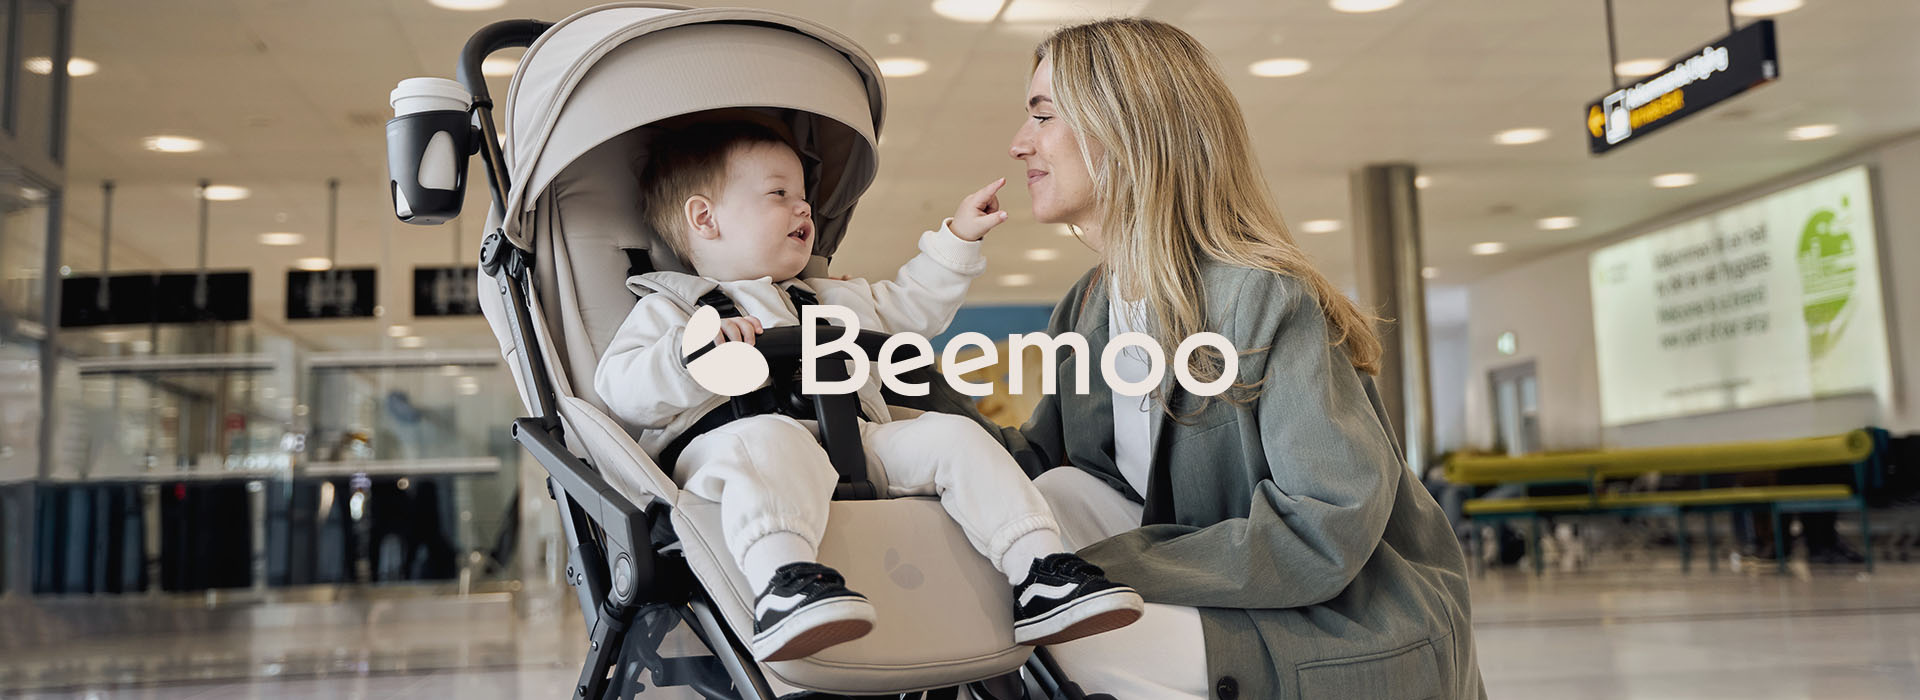 Beemoo2.0-header-1920x700.jpg